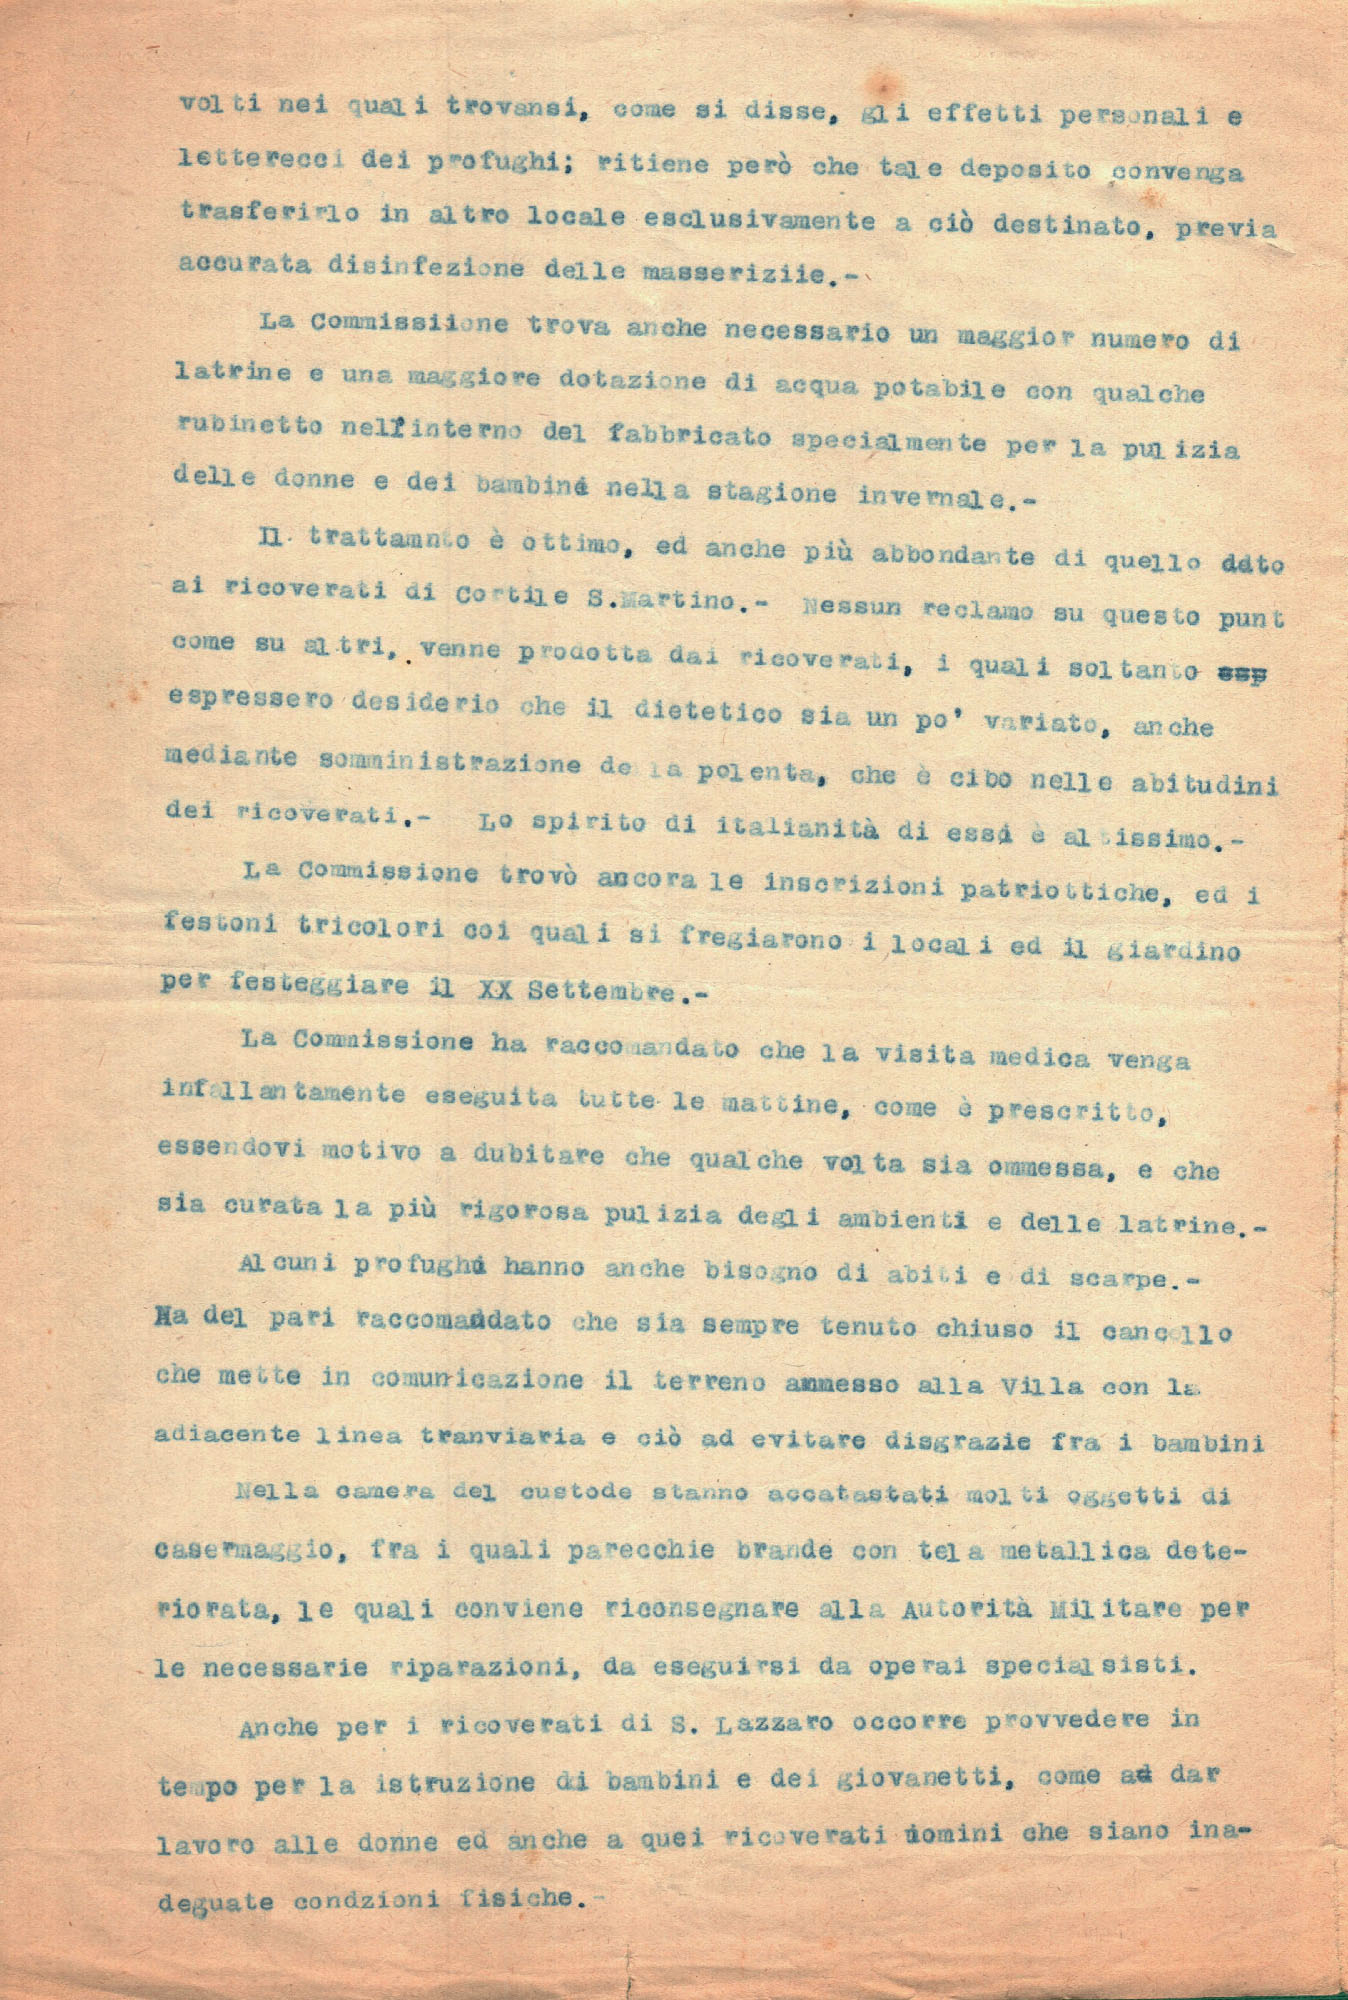 Relazione della Commissione profughi a seguito di un'ispezione presso la colonia di Villa Tonarelli (Archivio storico comunale di Parma)